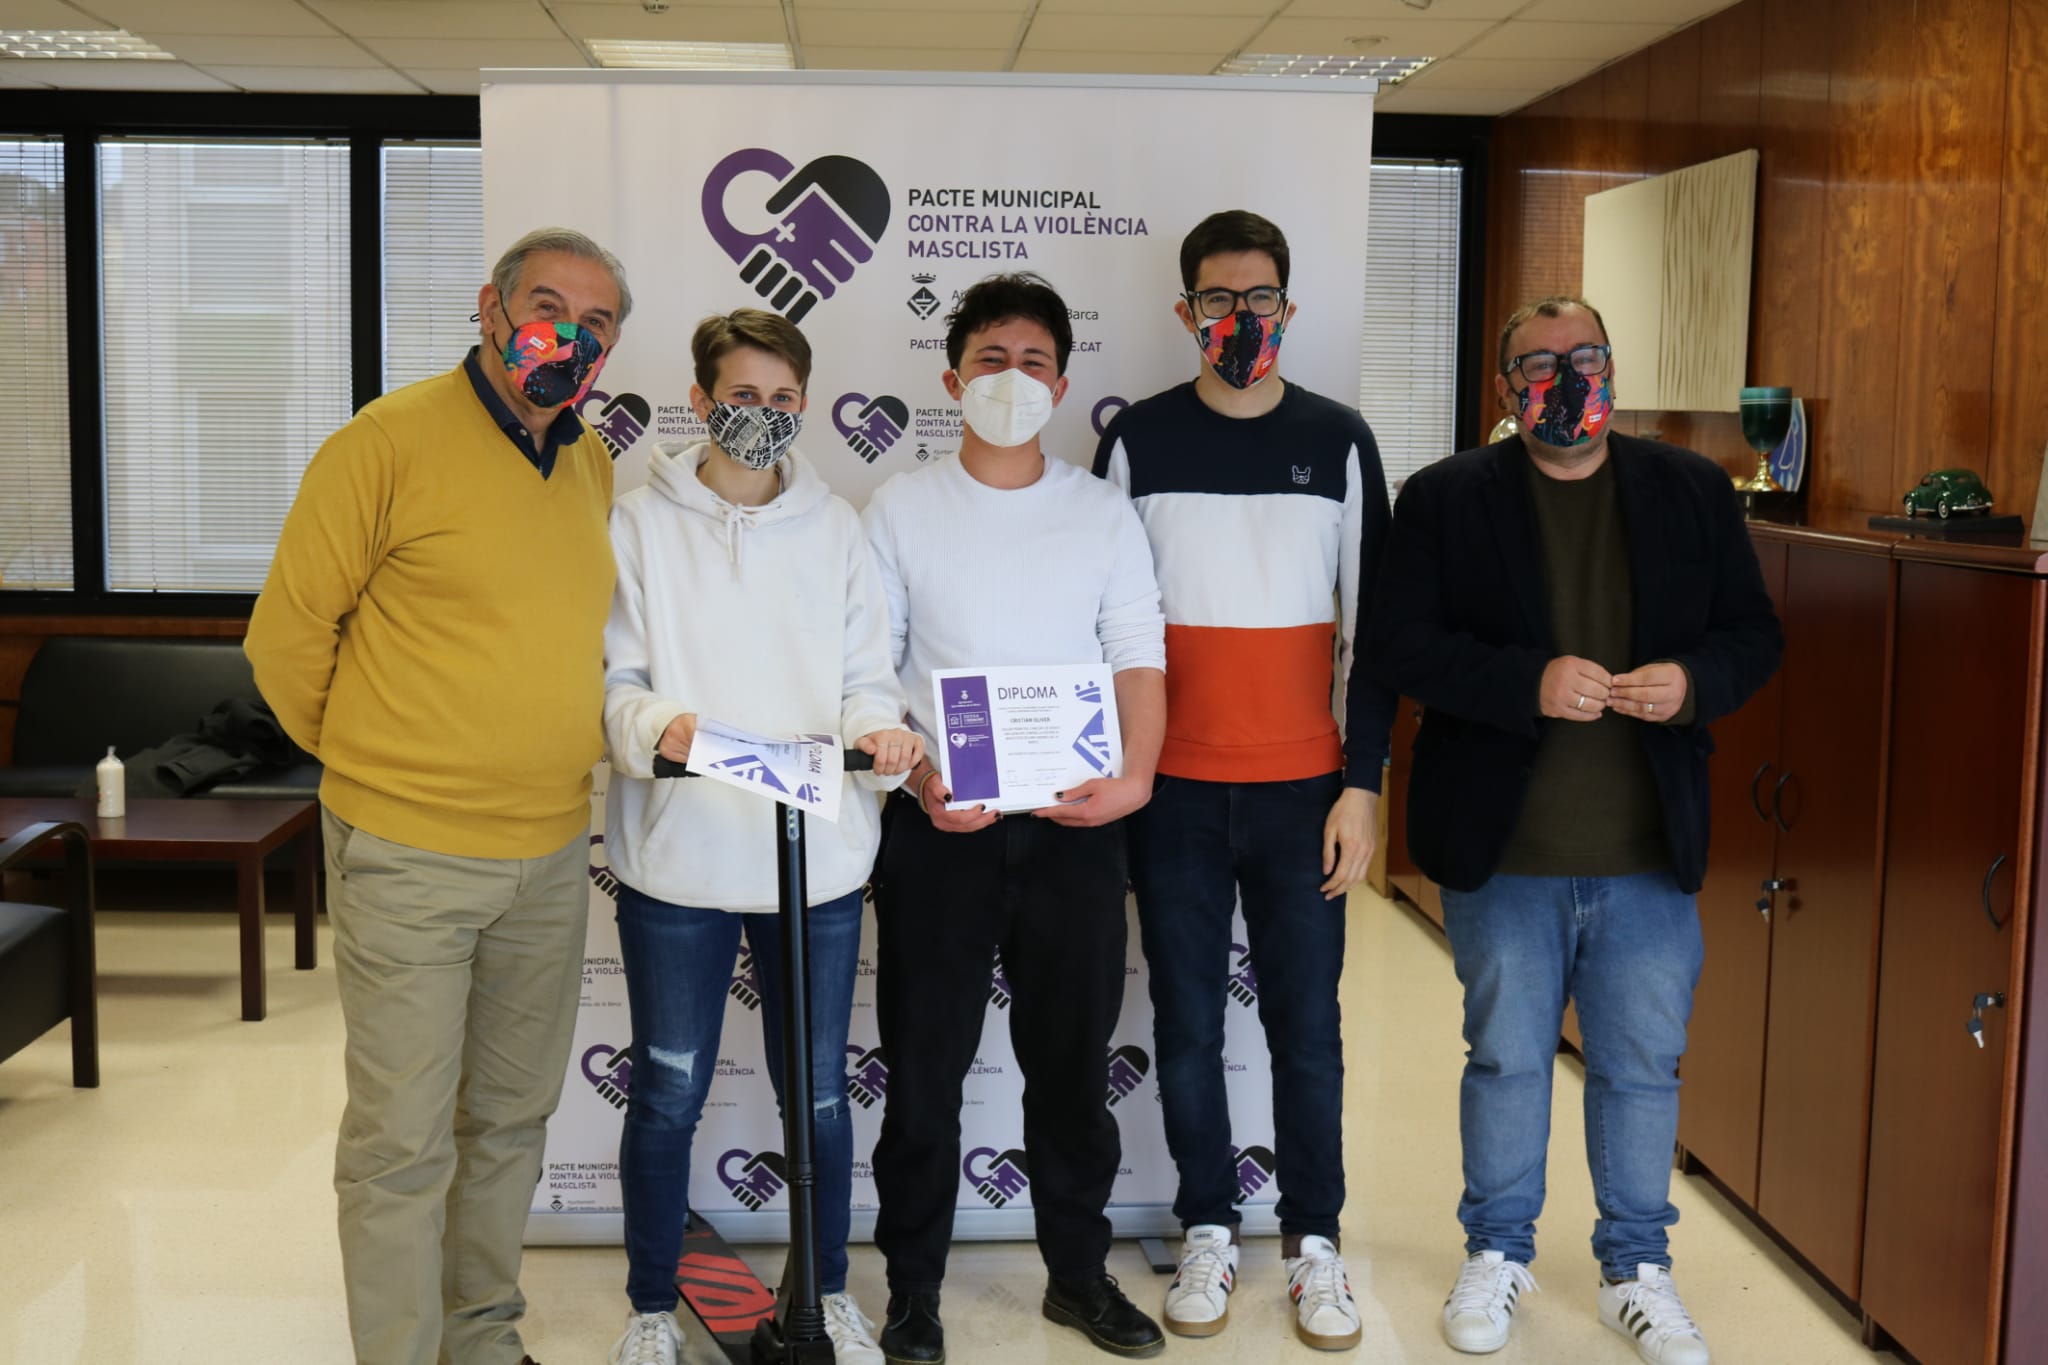 Els joves de Sant Andreu contribueixen a acabar amb la violència masclista